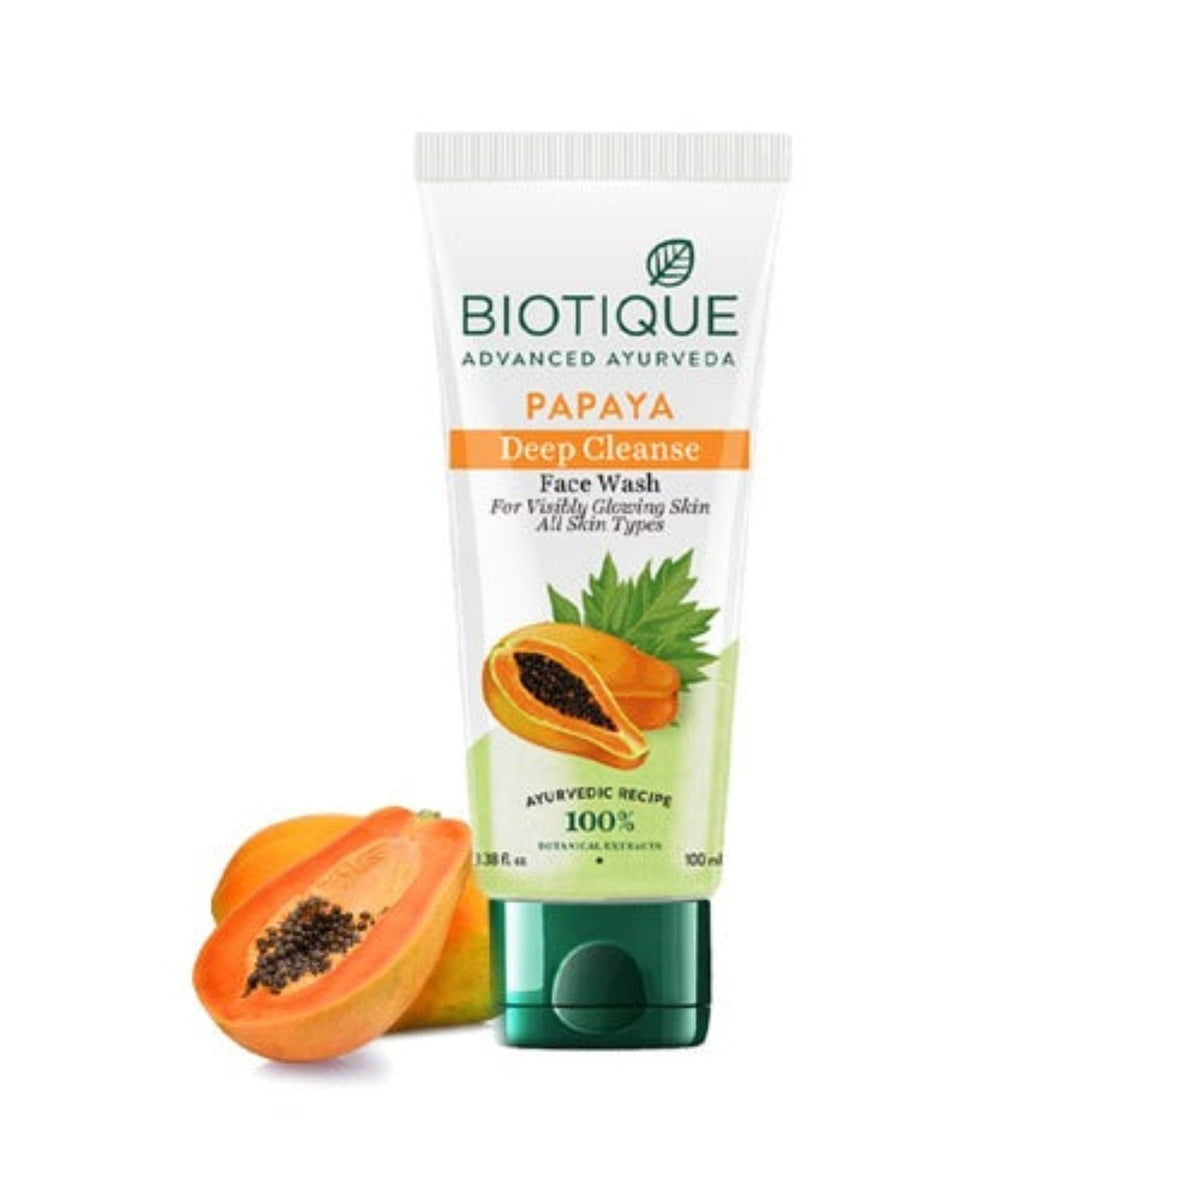 Biotique Papaya Tiefenreinigung, Honiggel und frisches Neem zur Pickelkontrolle, beruhigt und pflegt, schäumendes Gesichtswaschmittel, seifenfreie Formel, reduziert Trockenheit, 100 % pflanzliche Extrakte, für alle Hauttypen geeignet